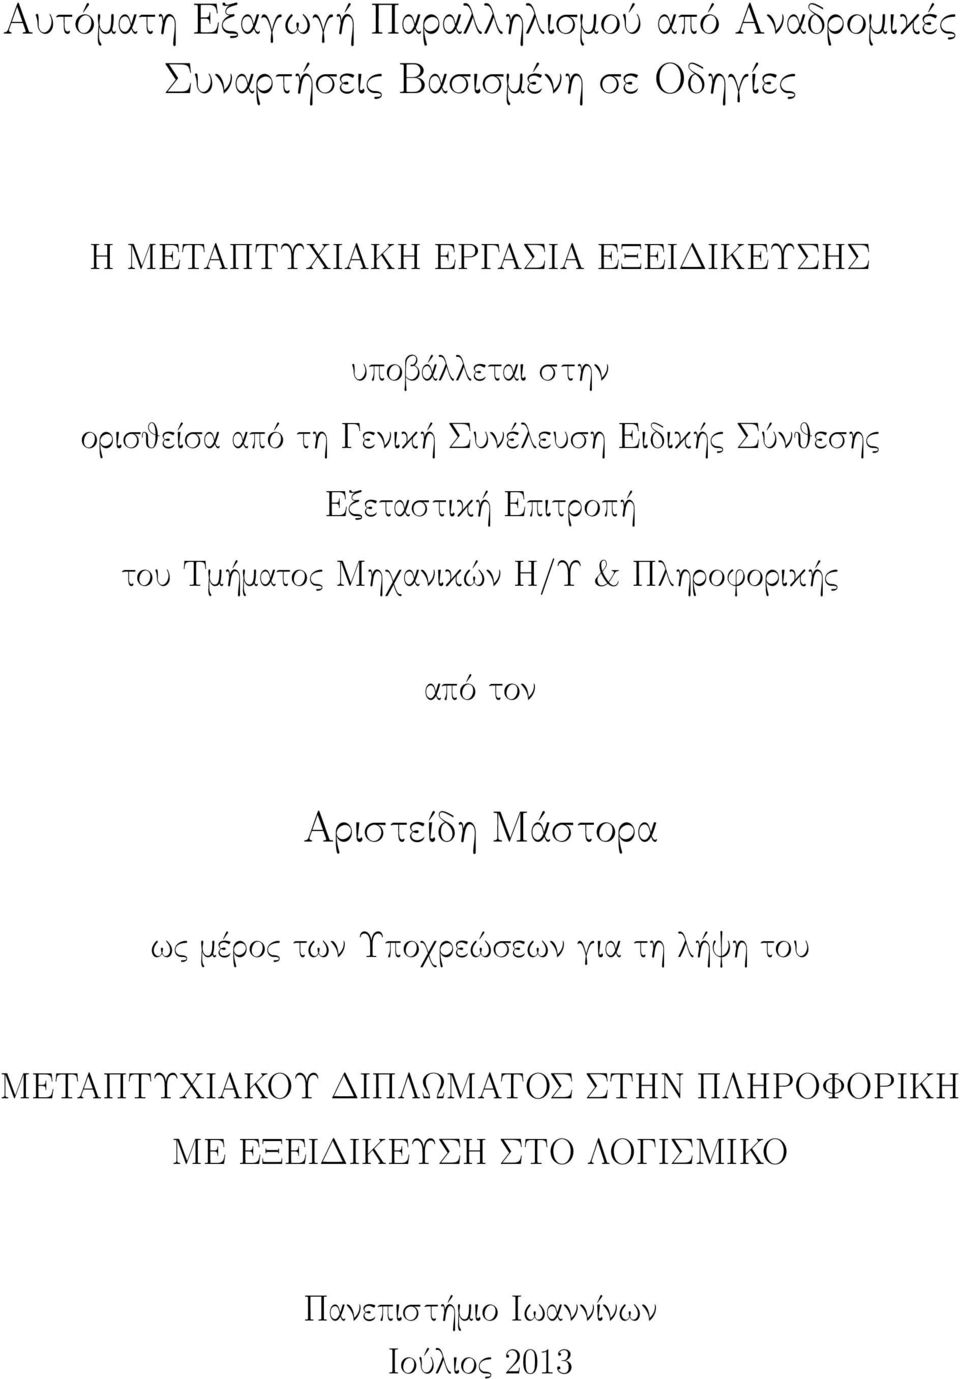 Τμήματος Μηχανικών Η/Υ & Πληροφορικής από τον Αριστείδη Μάστορα ως μέρος των Υποχρεώσεων για τη λήψη του